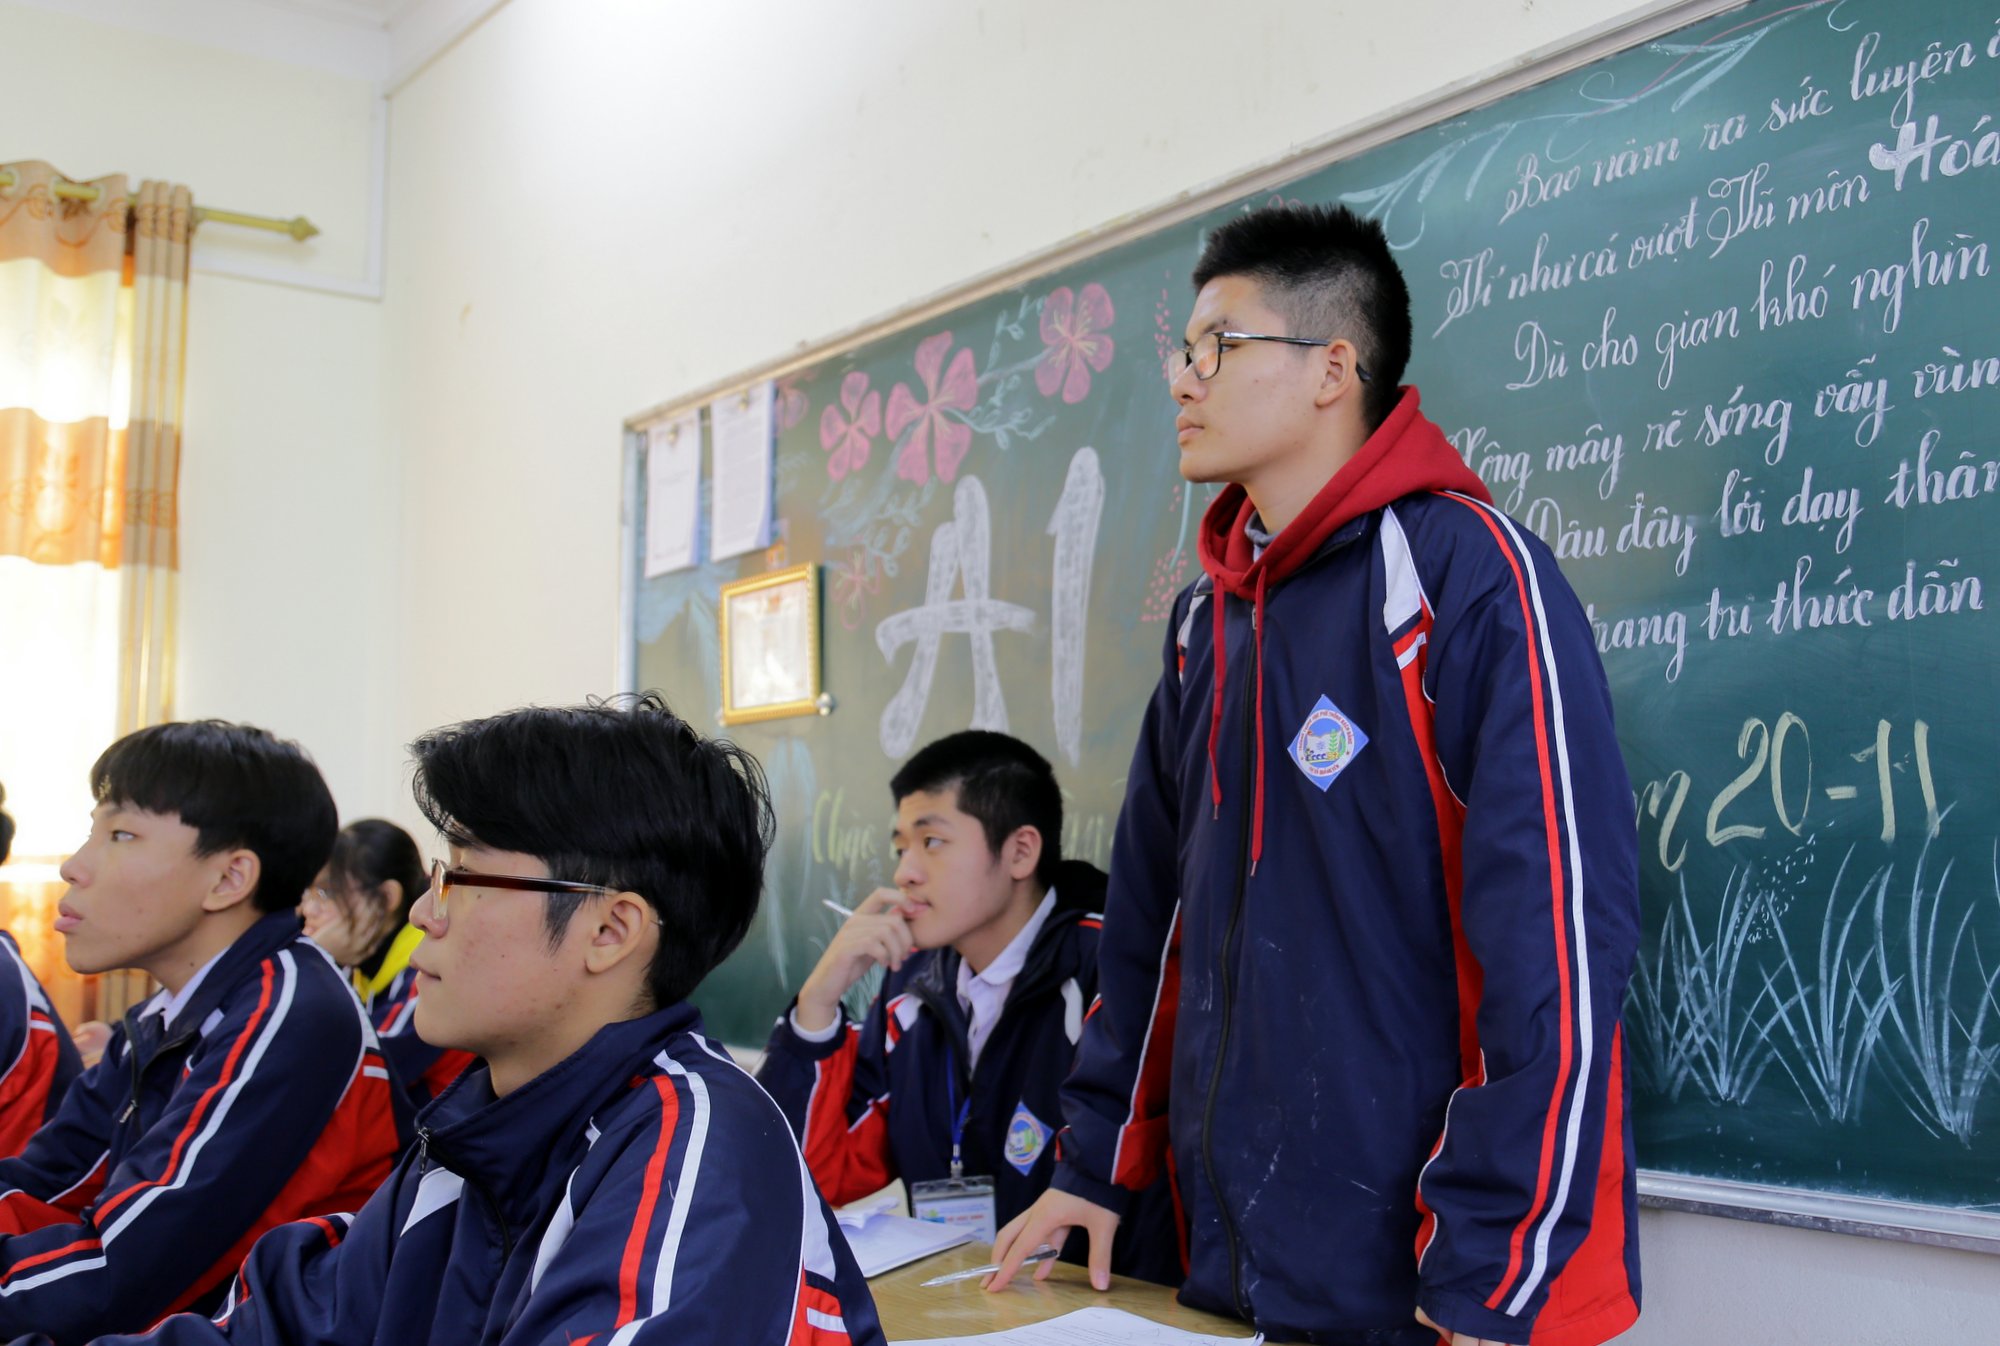 Nguyễn Hoàng Khánh, học sinh lớp 11A1, Trường THPT Bạch Đằng, TX Quảng Yên, người vừa xuất sắc ghi danh vào trận Chung kết năm thứ 21 của cuộc thi Đường lên đỉnh Olympia.